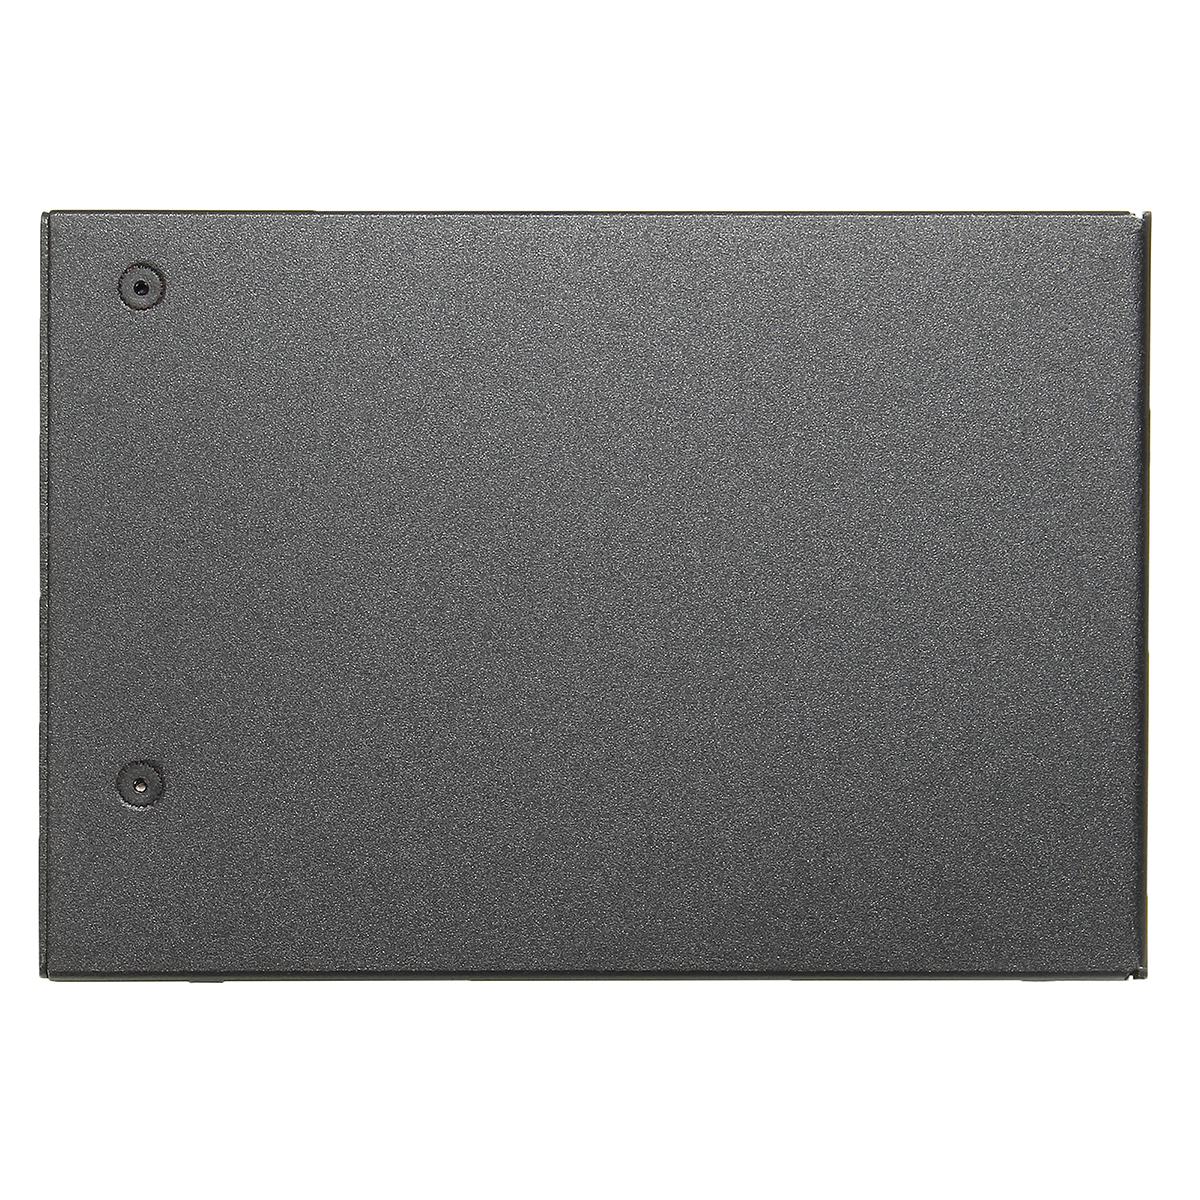 Micro SATA 1.8" to 2.5" SATA HDD Hard Drive Card Converter Adapter HDD Hard Disk Metal Case 6